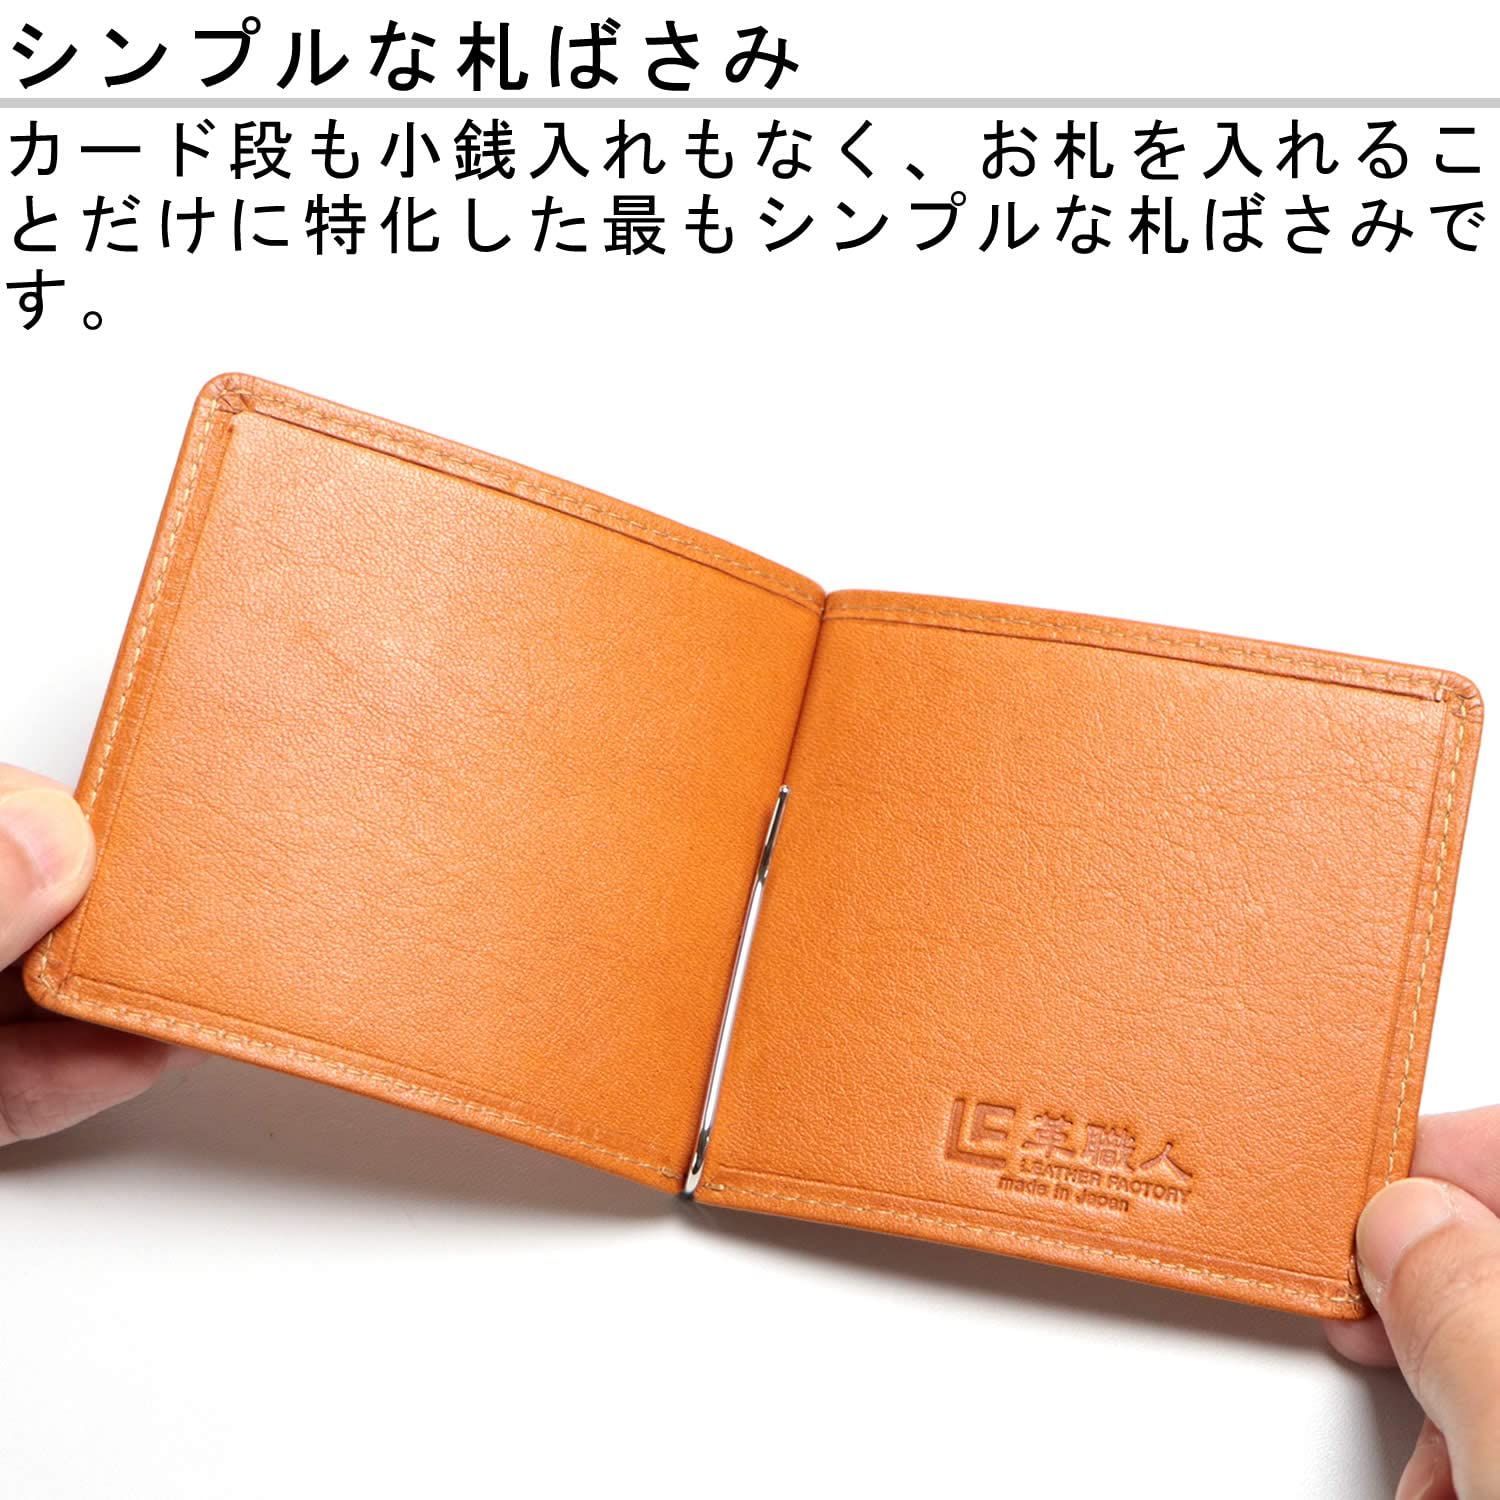 本革マネークリップ 超薄型財布 カードと紙幣収納